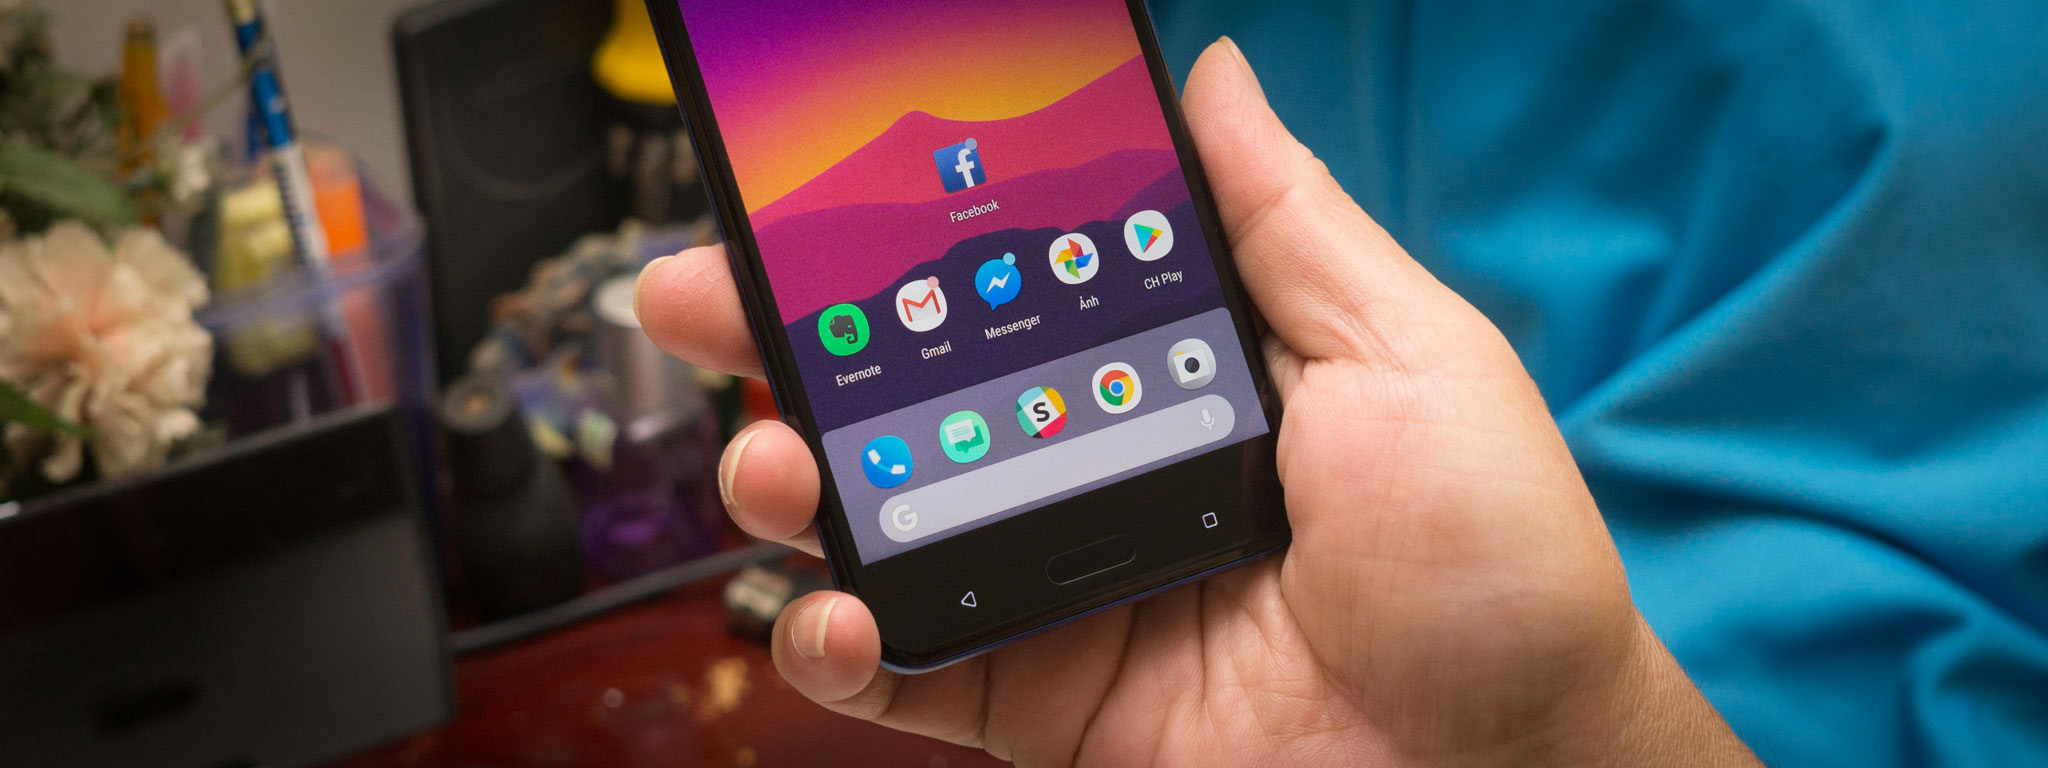 Cảm nhận Android 8: đã qua thời đổi giao diện, giờ là tính dễ dùng, chạy mượt và pin ngon